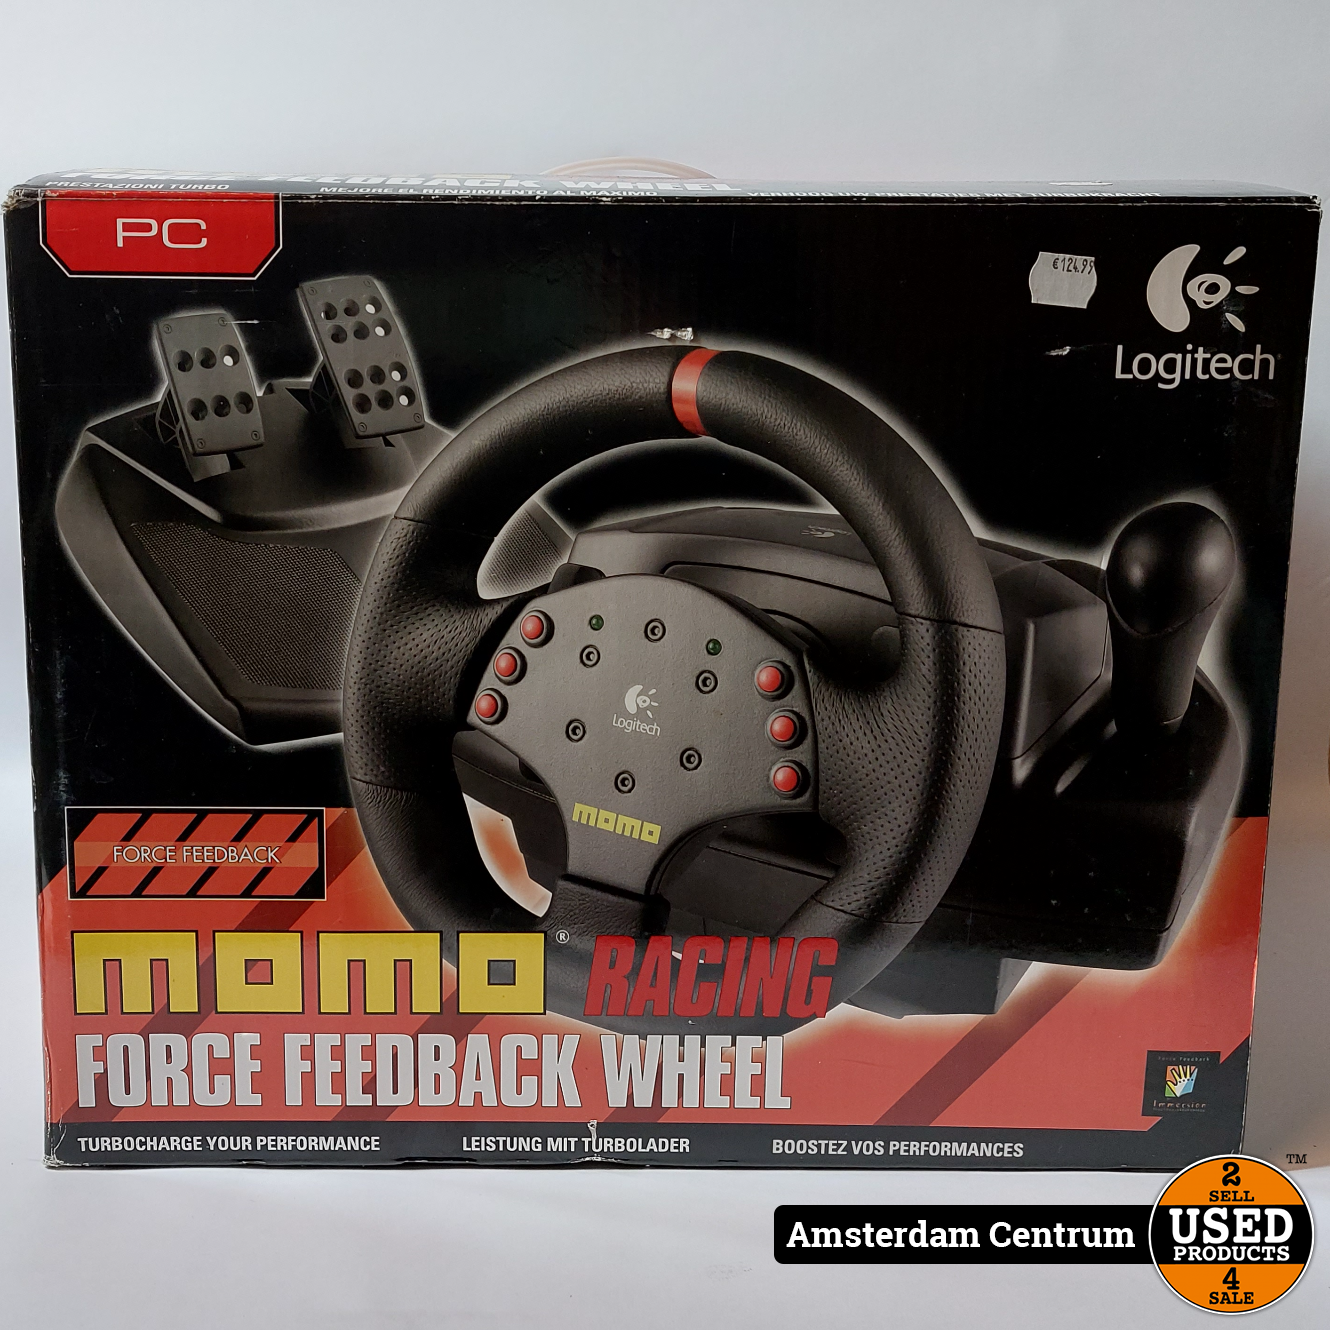 Драйвера на руль logitech momo racing. Logitech Momo Racing Force feedback Wheel. Logitech Momo Racing руль желтый. Регулировка Momo Racing. Драйвера на руль МОМО логитеч.